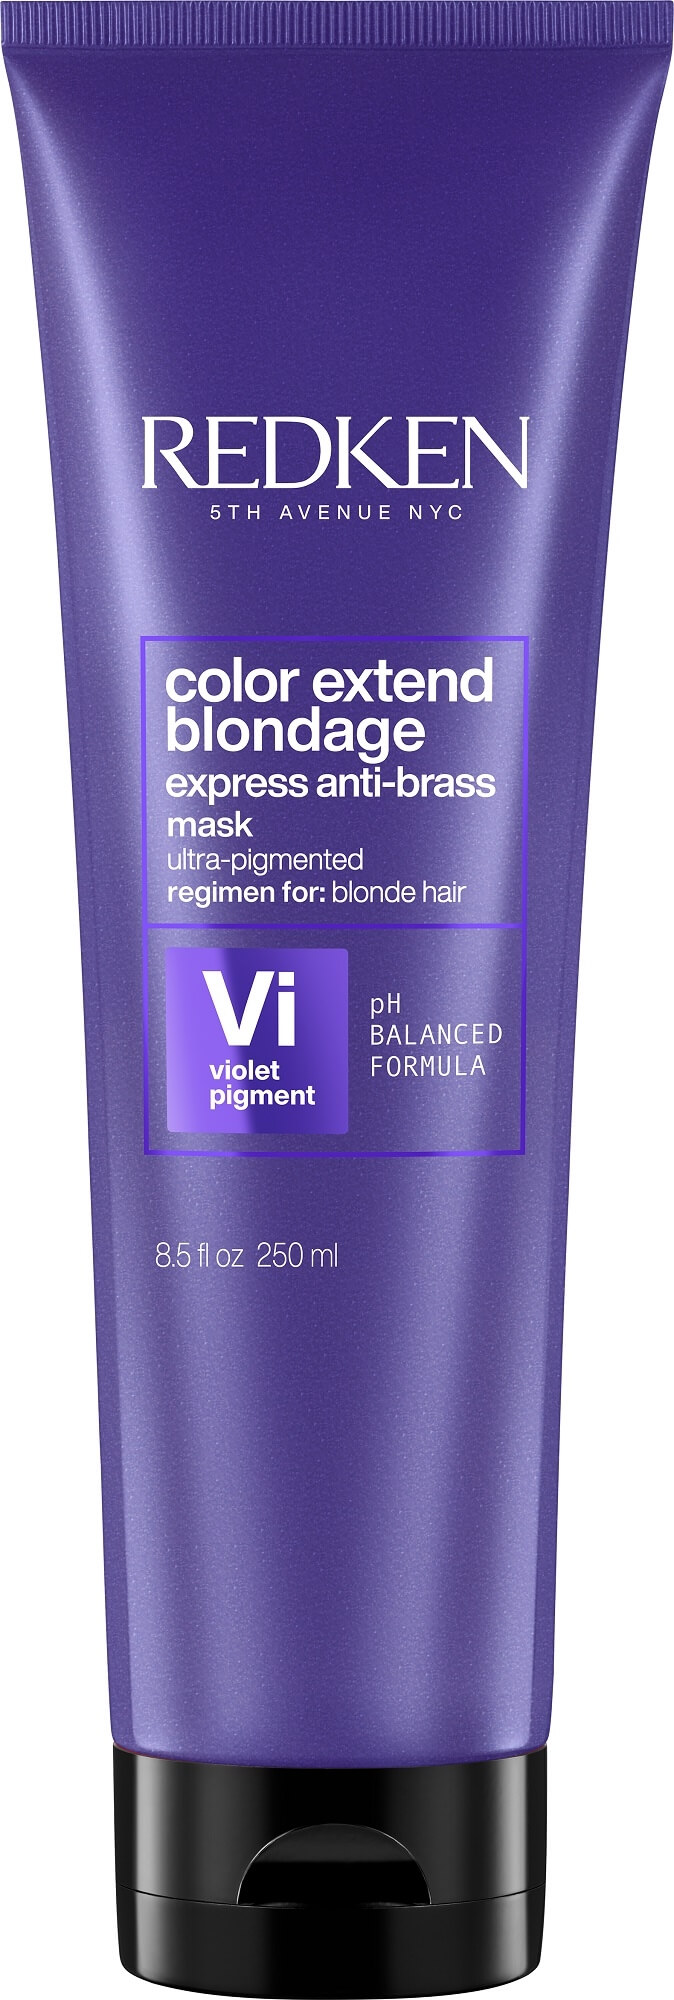 Redken Maska neutralizující žluté tóny vlasů Color Extend Blondage (Express Anti-brass Purple Mask) 